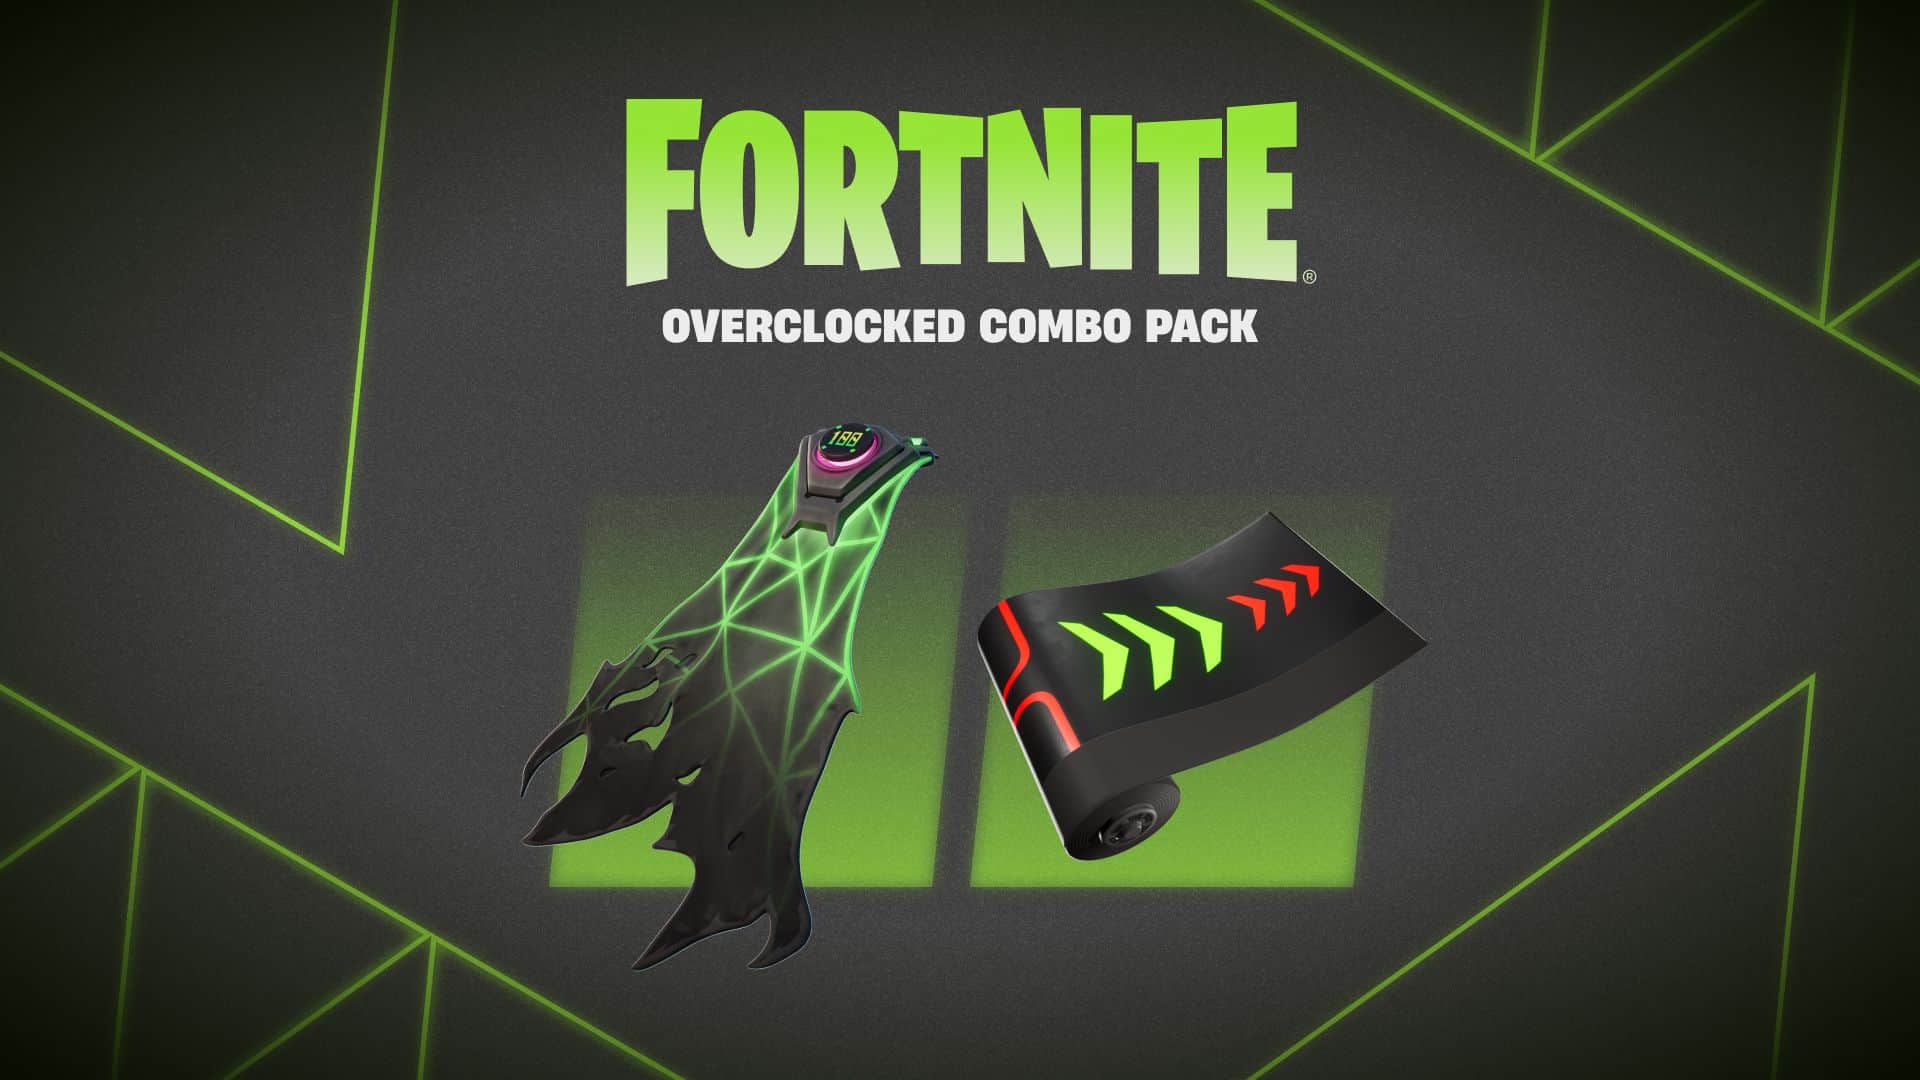 Fortnite overclocked combo pack